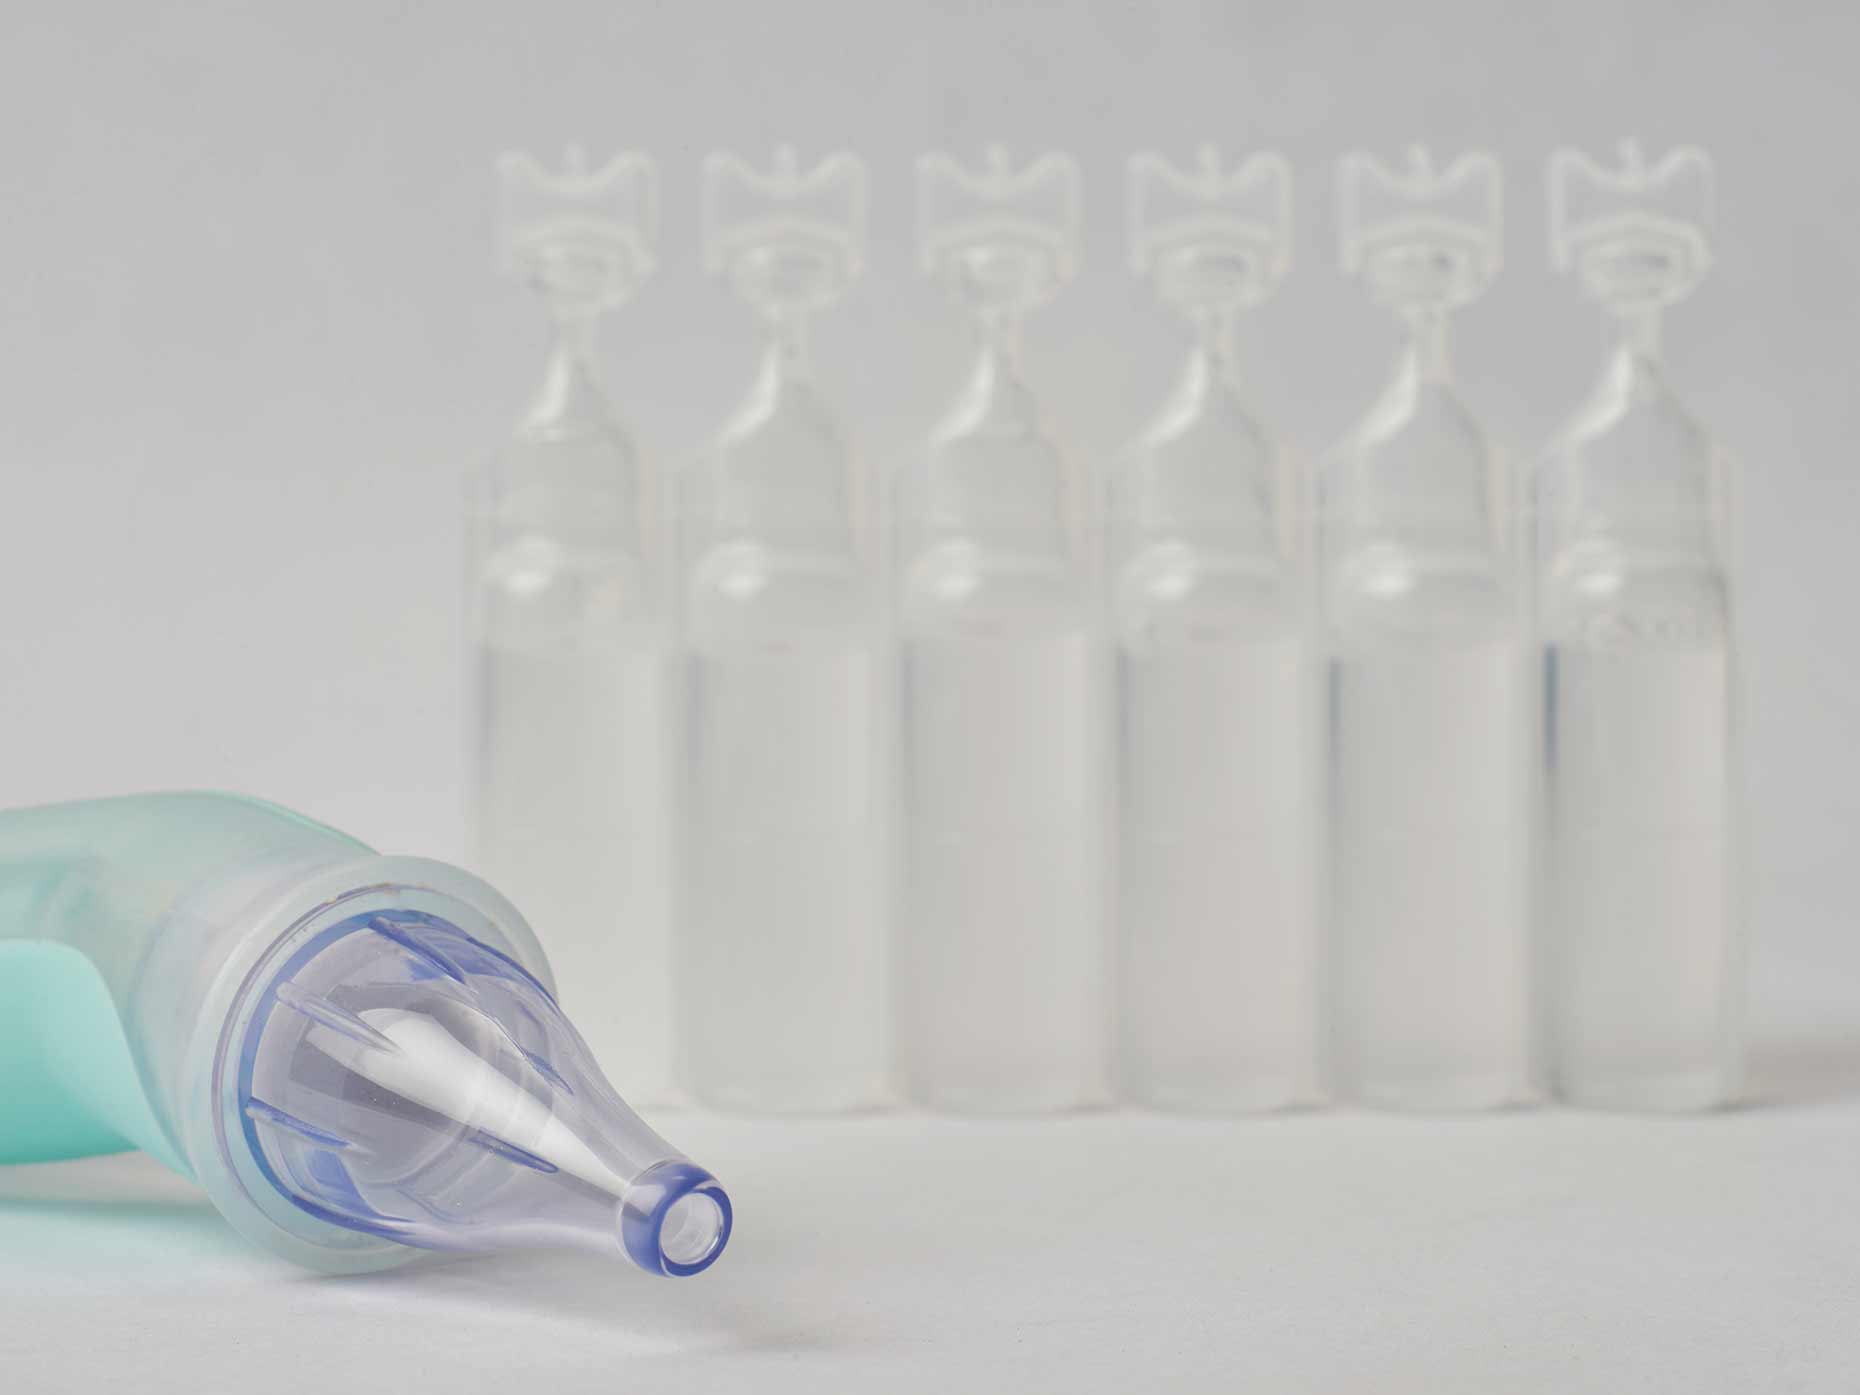 Soluzioni saline per lavaggi nasali: quale scegliere - Amico Pediatra